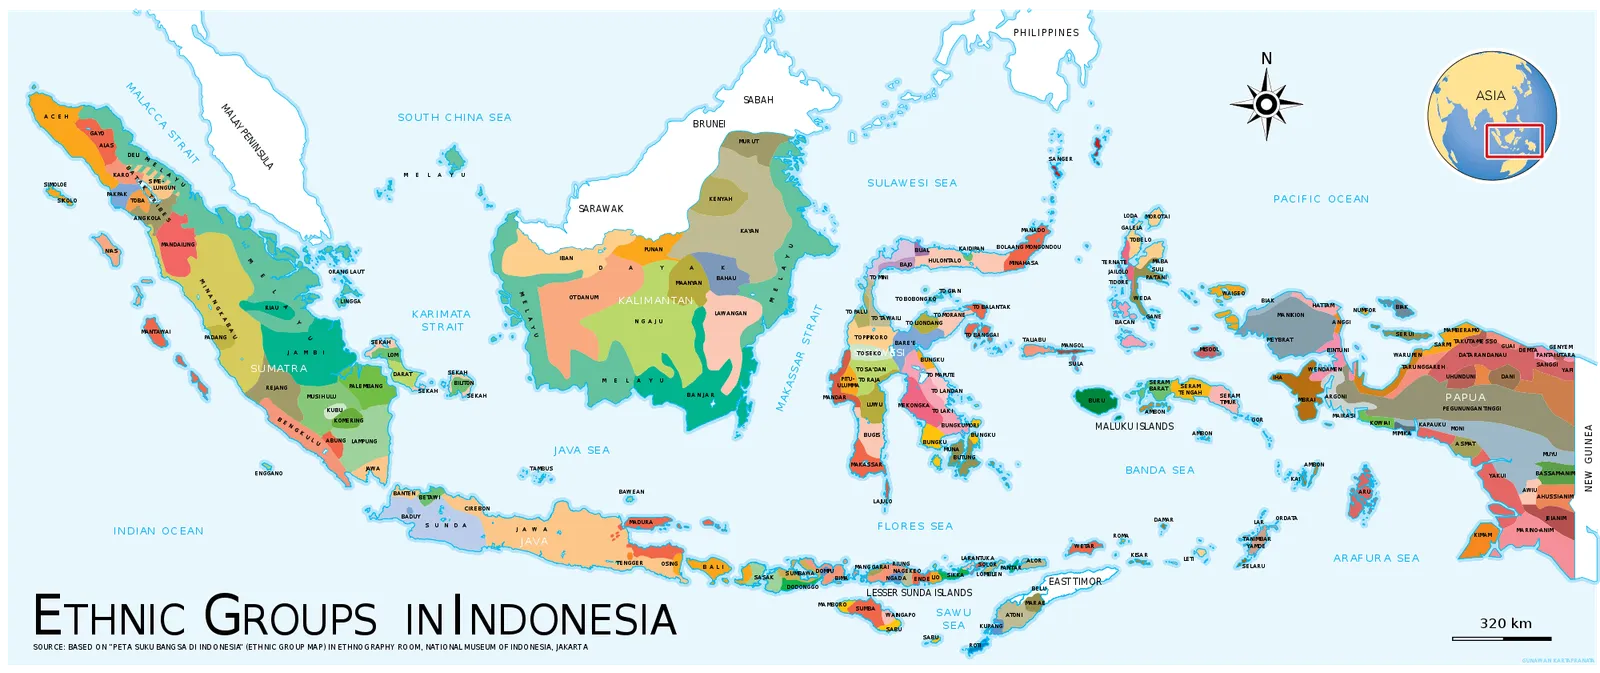 Inilah Pribumi Asli Indonesia Berdasarkan Sejarah, Sudah Tahu?